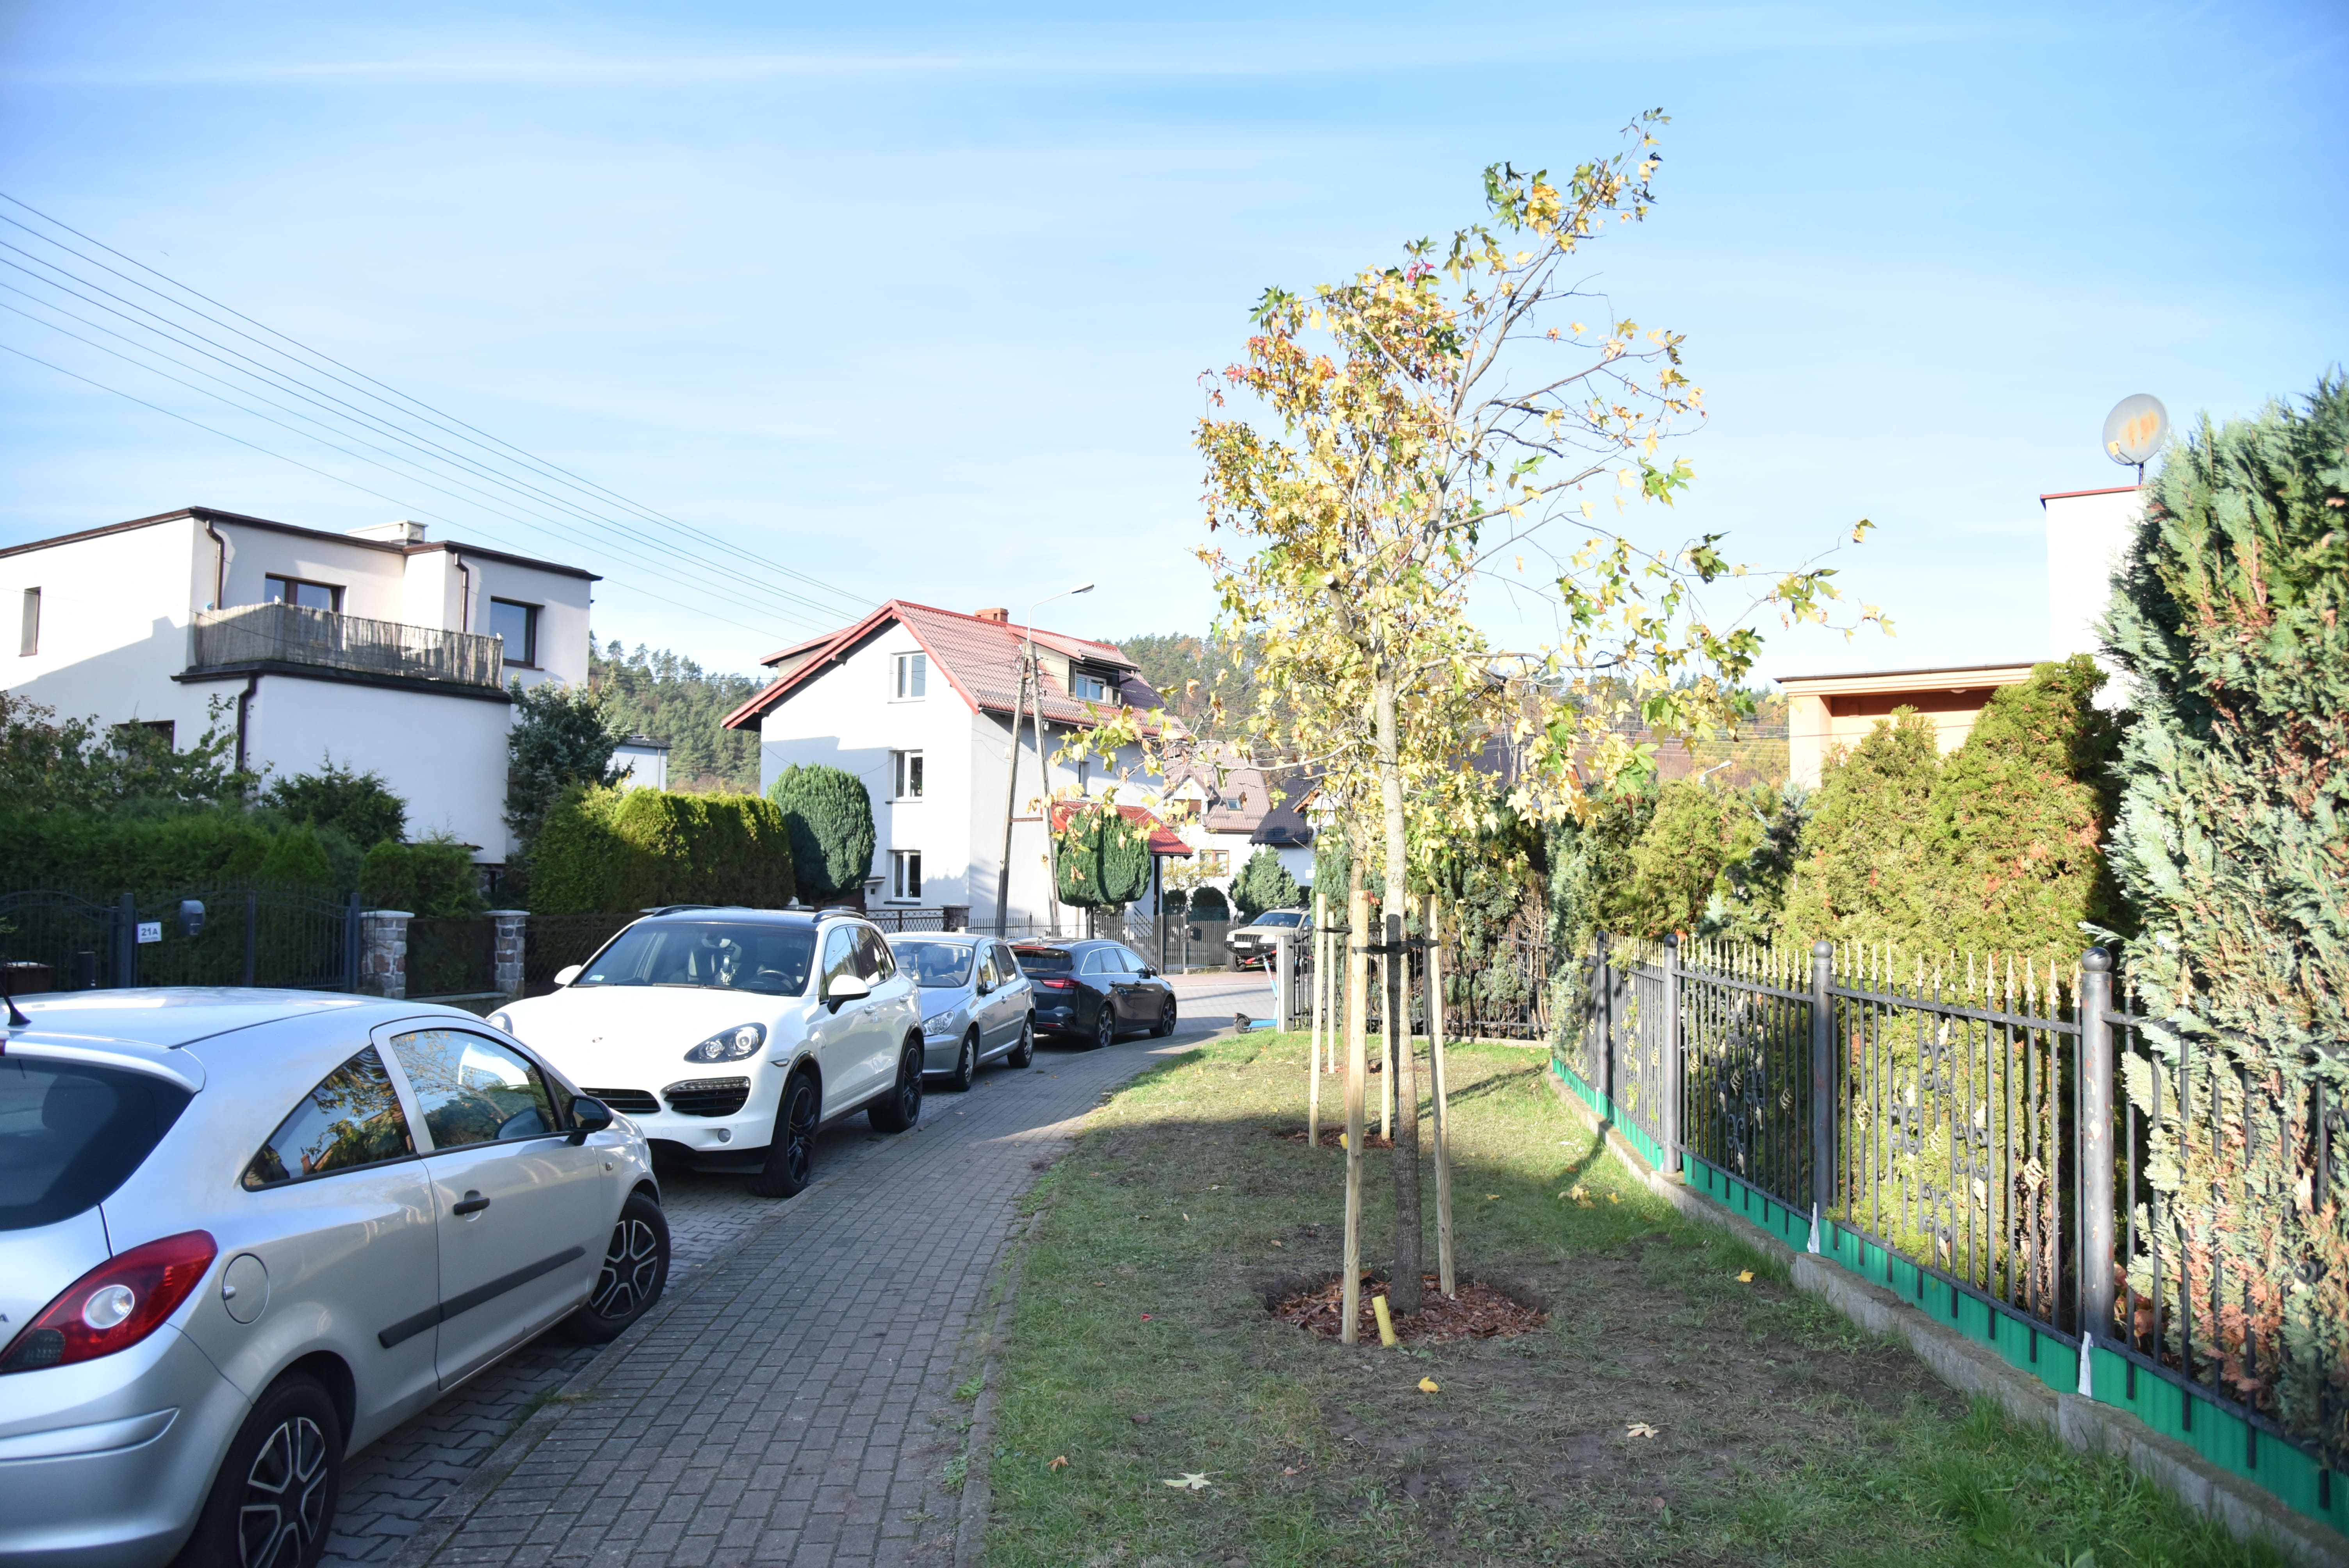 Drzewa, które w listopadzie zostały posadzone przy rumskich ulicach